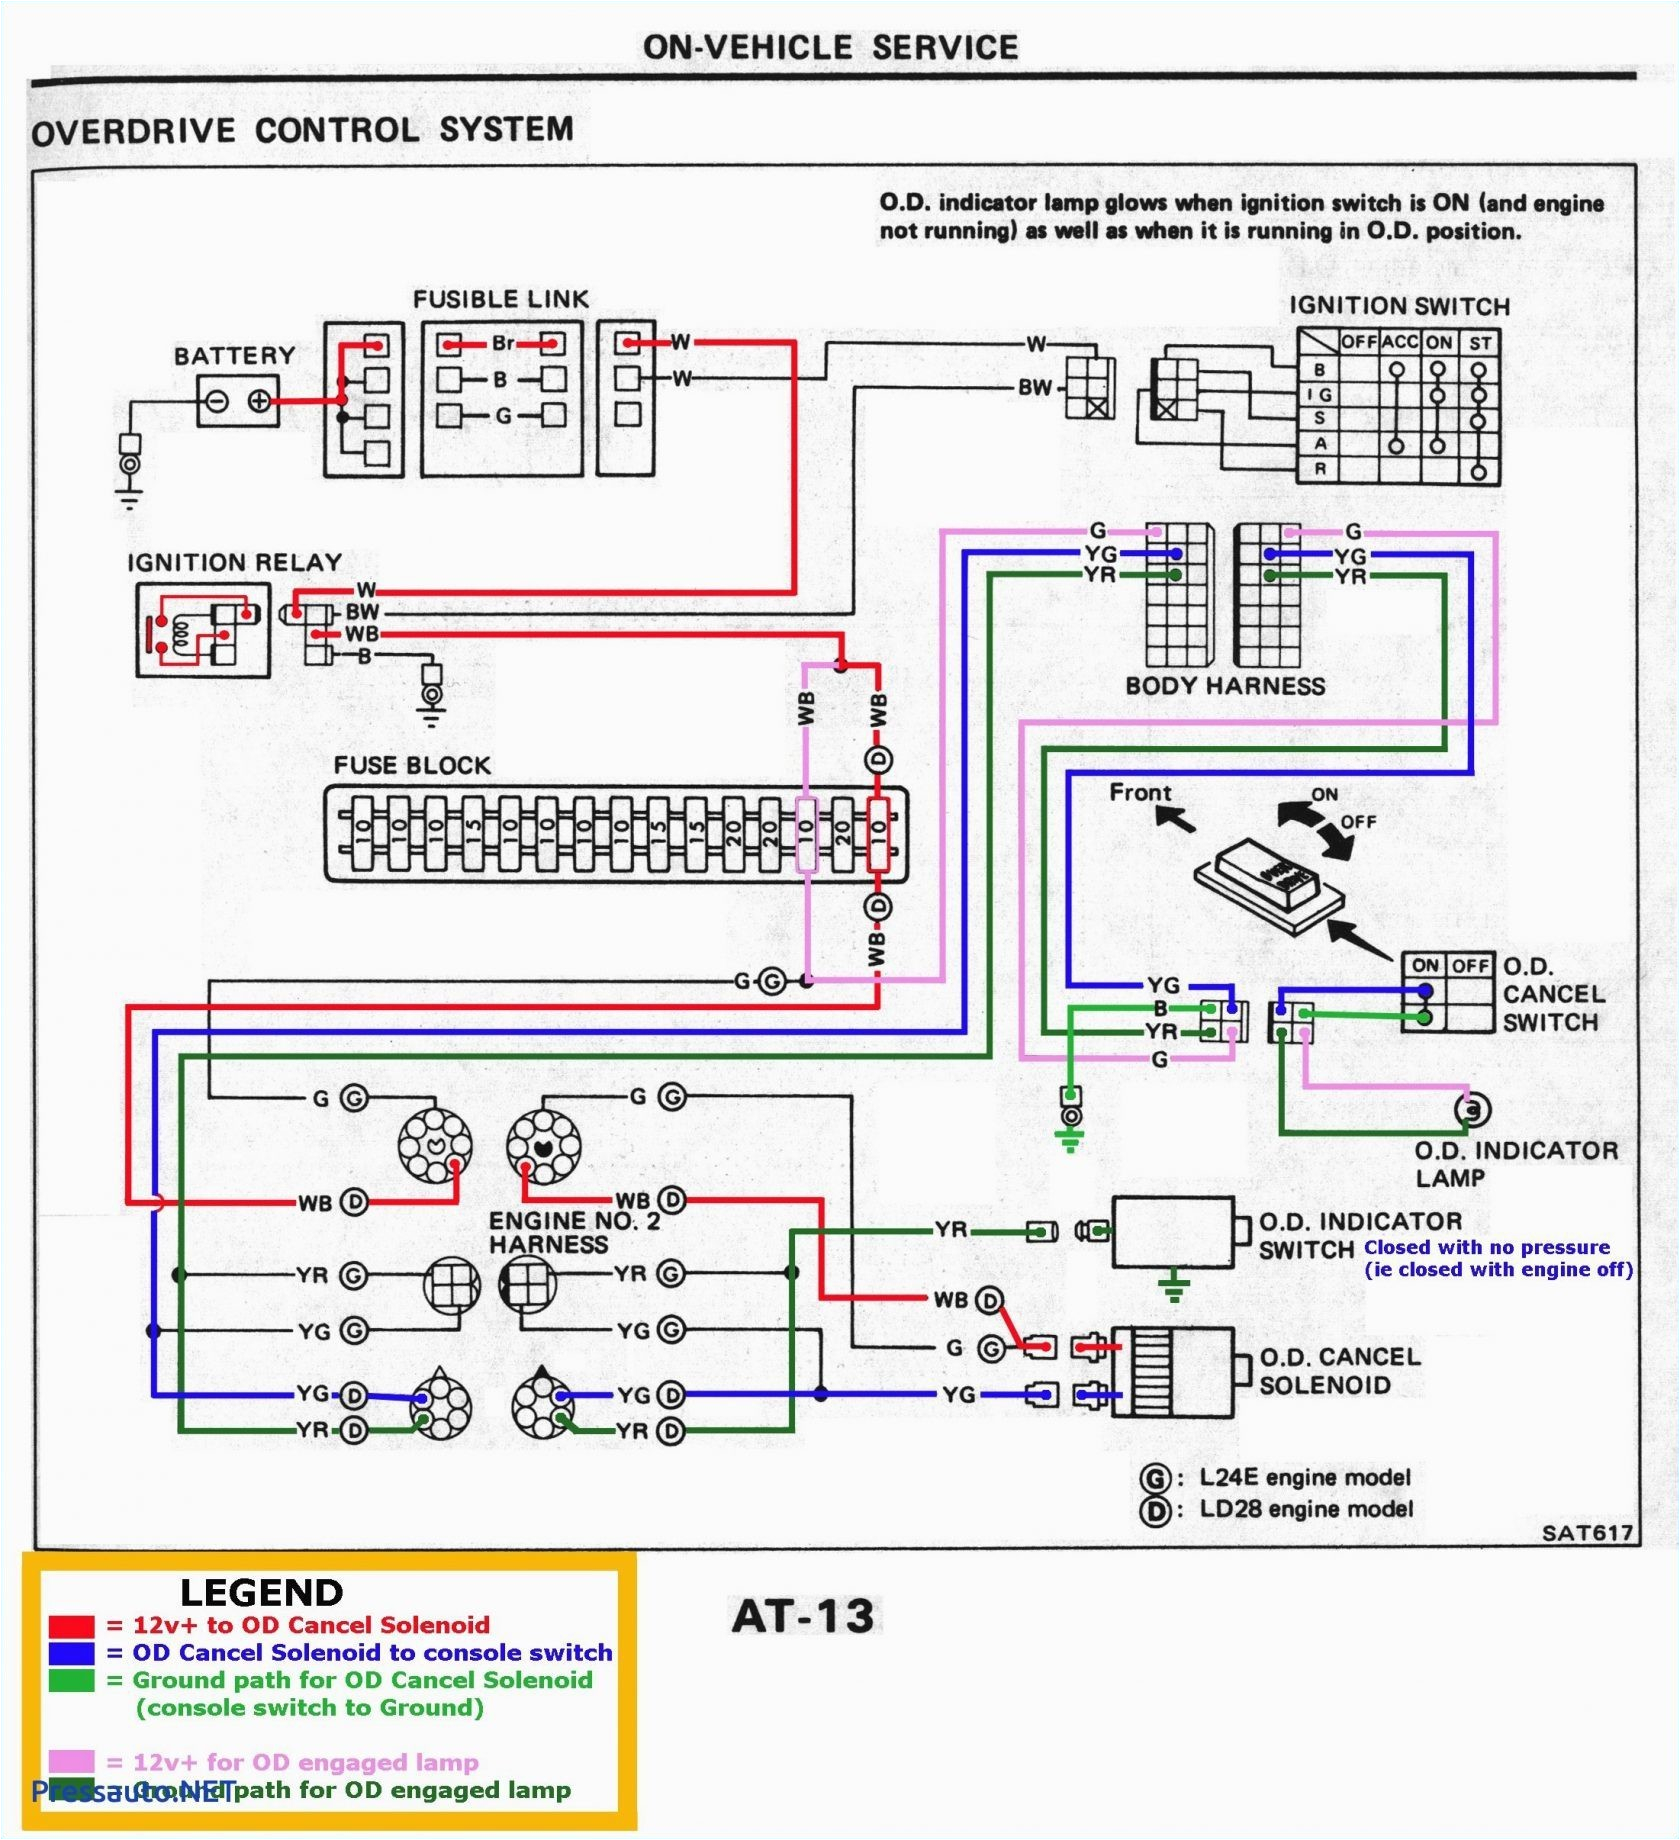 dc current indicator 6 basiccircuit circuit diagram seekiccom dc current indicator 6 basiccircuit circuit diagram seekiccom